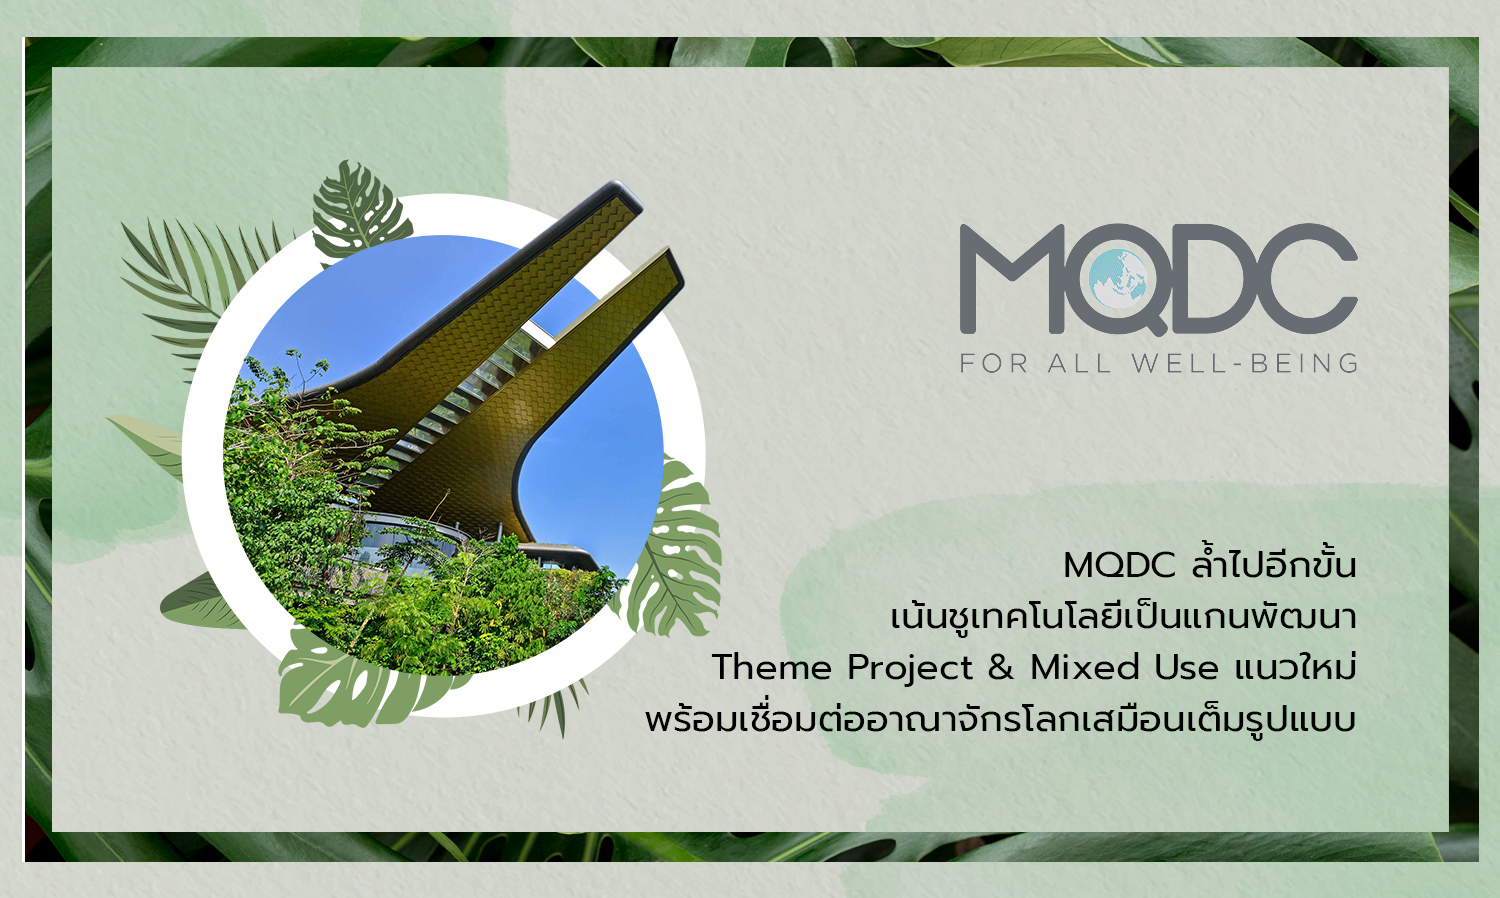 MQDC ล้ำไปอีกขั้น เน้นชูเทคโนโลยีเป็นแกนพัฒนา Theme Project & Mixed Use แนวใหม่ พร้อมเชื่อมต่ออาณาจักรโลกเสมือนเต็มรูปแบบ